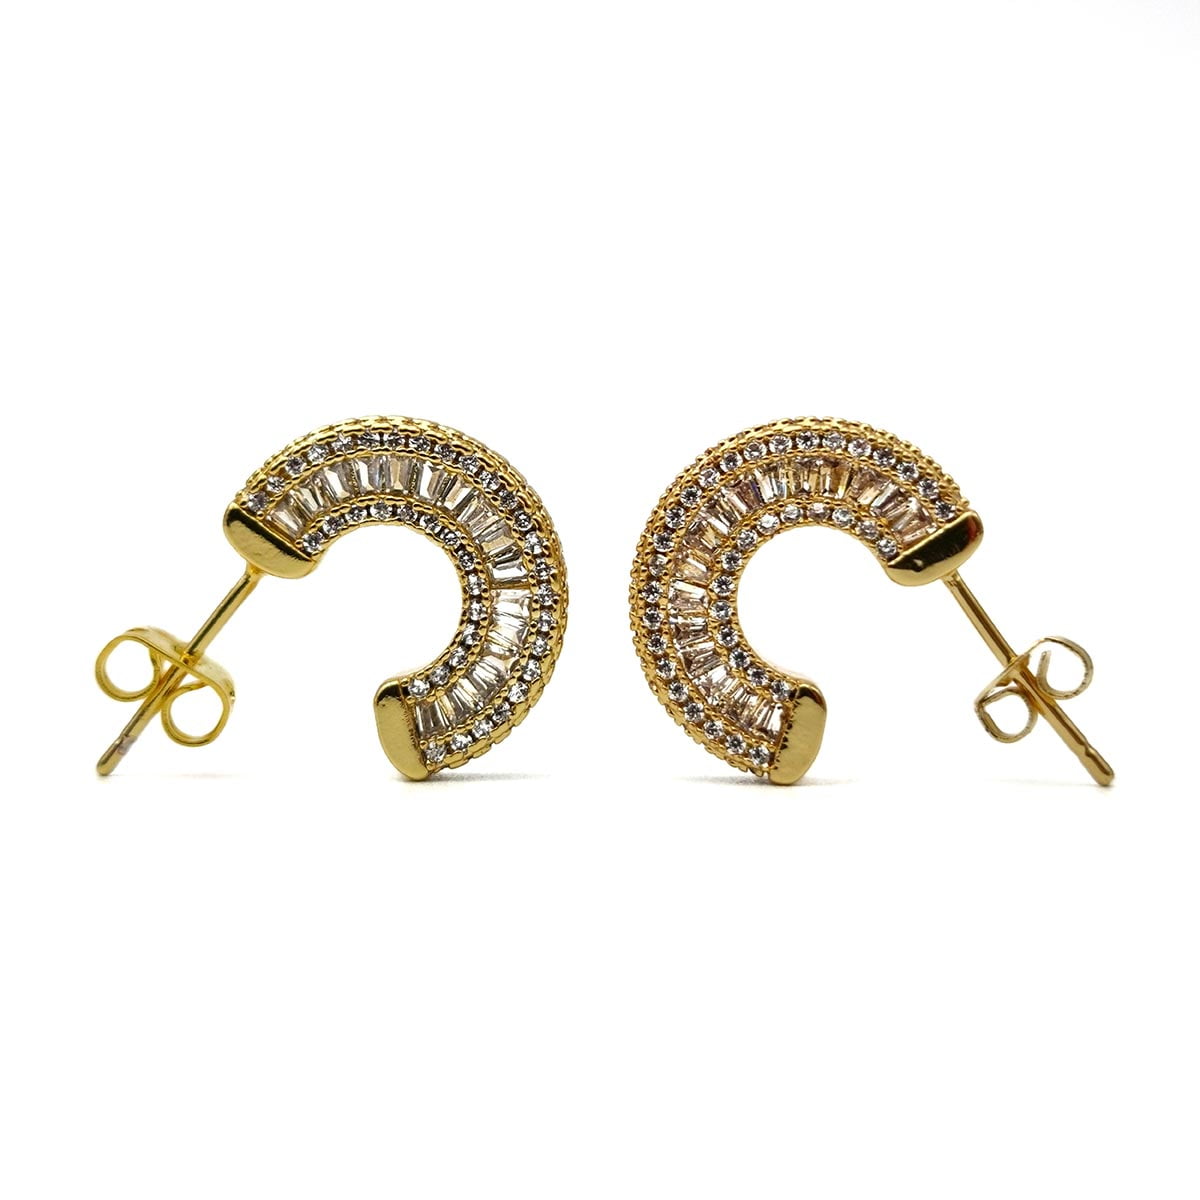 σκουλαρίκια Paris σε χρυσό χρώμα με ζιργκόν